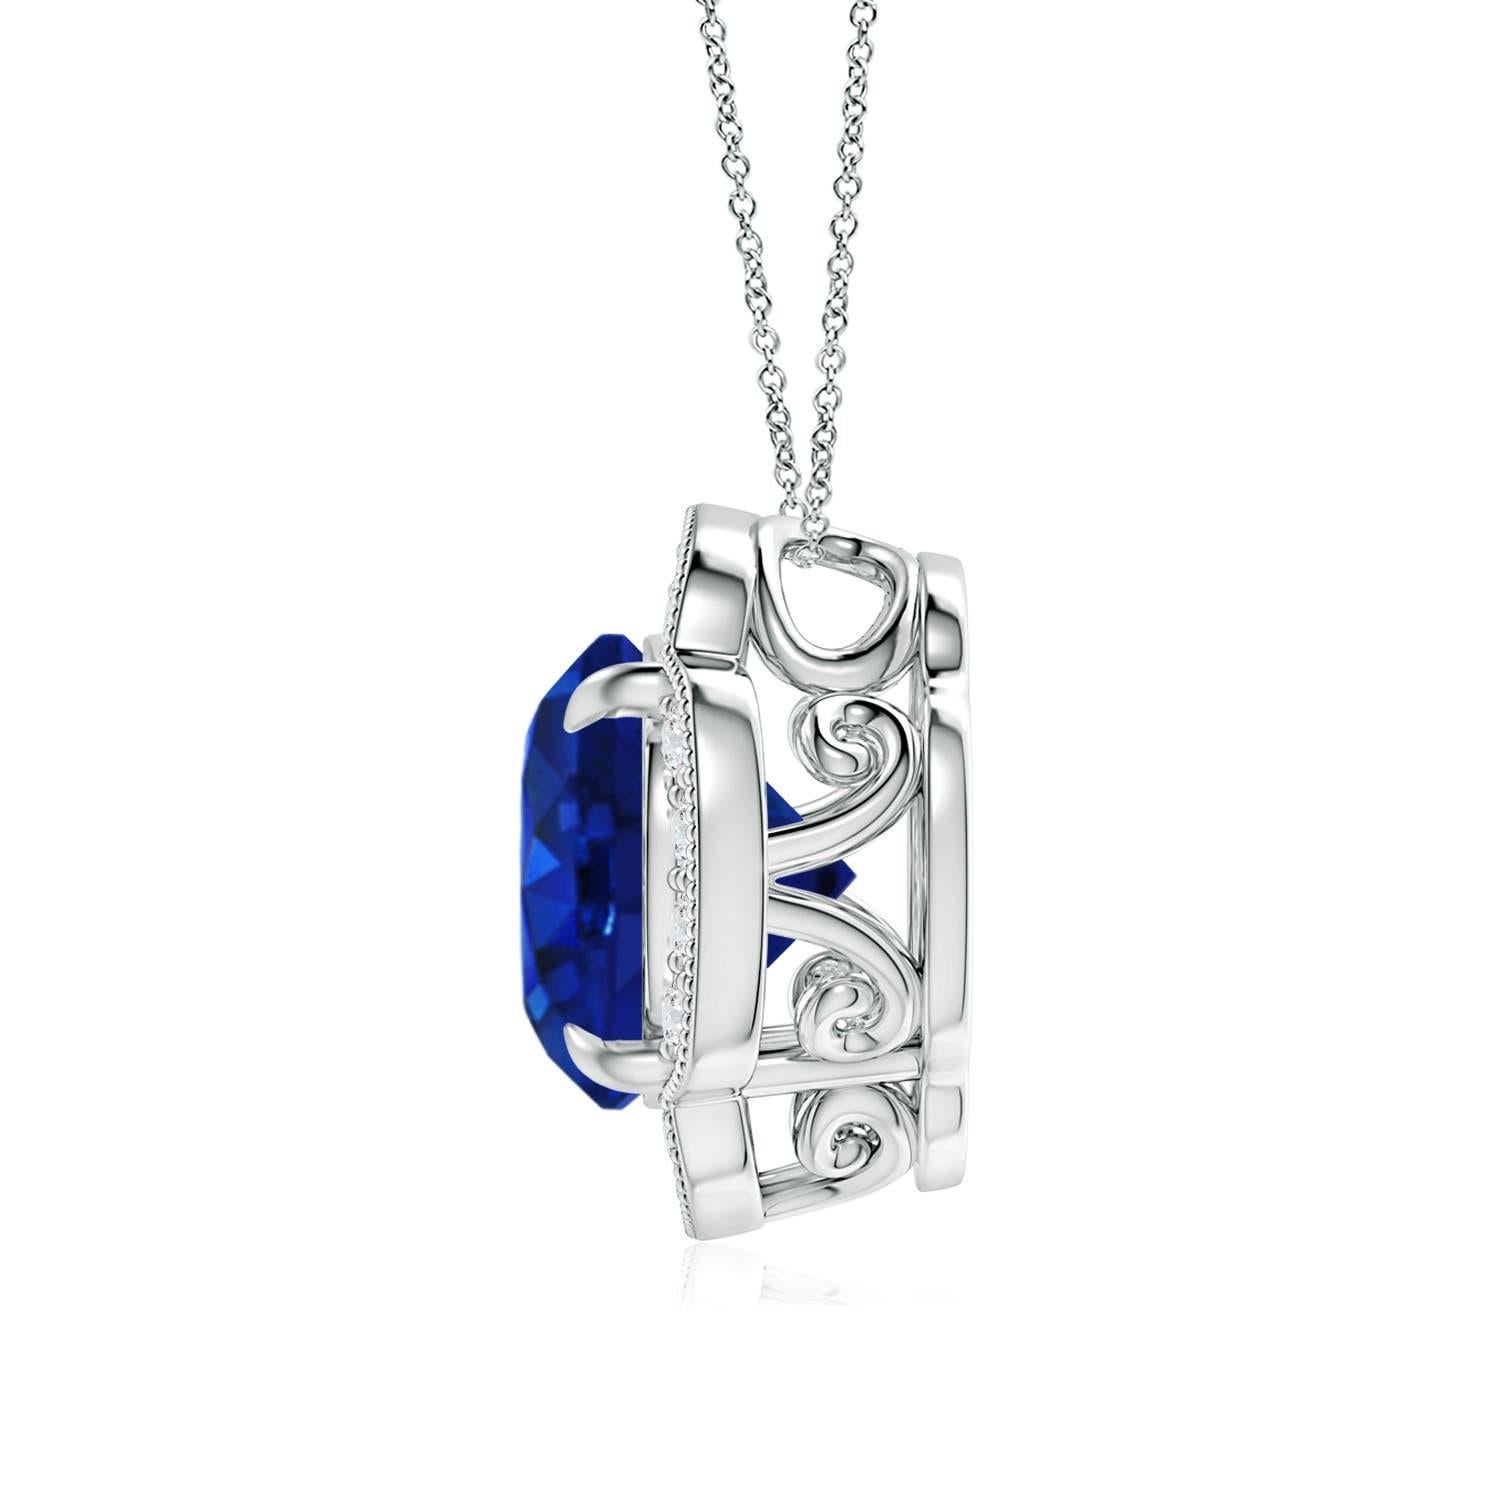 Der GIA-zertifizierte blaue Saphir-Klee-Anhänger scheint an der Kabelkette zu schweben. Der blaue Saphir ist in einer Krallenfassung gefasst und von einem floralen Halo aus schillernden runden Diamanten umgeben. Dieser verführerische runde